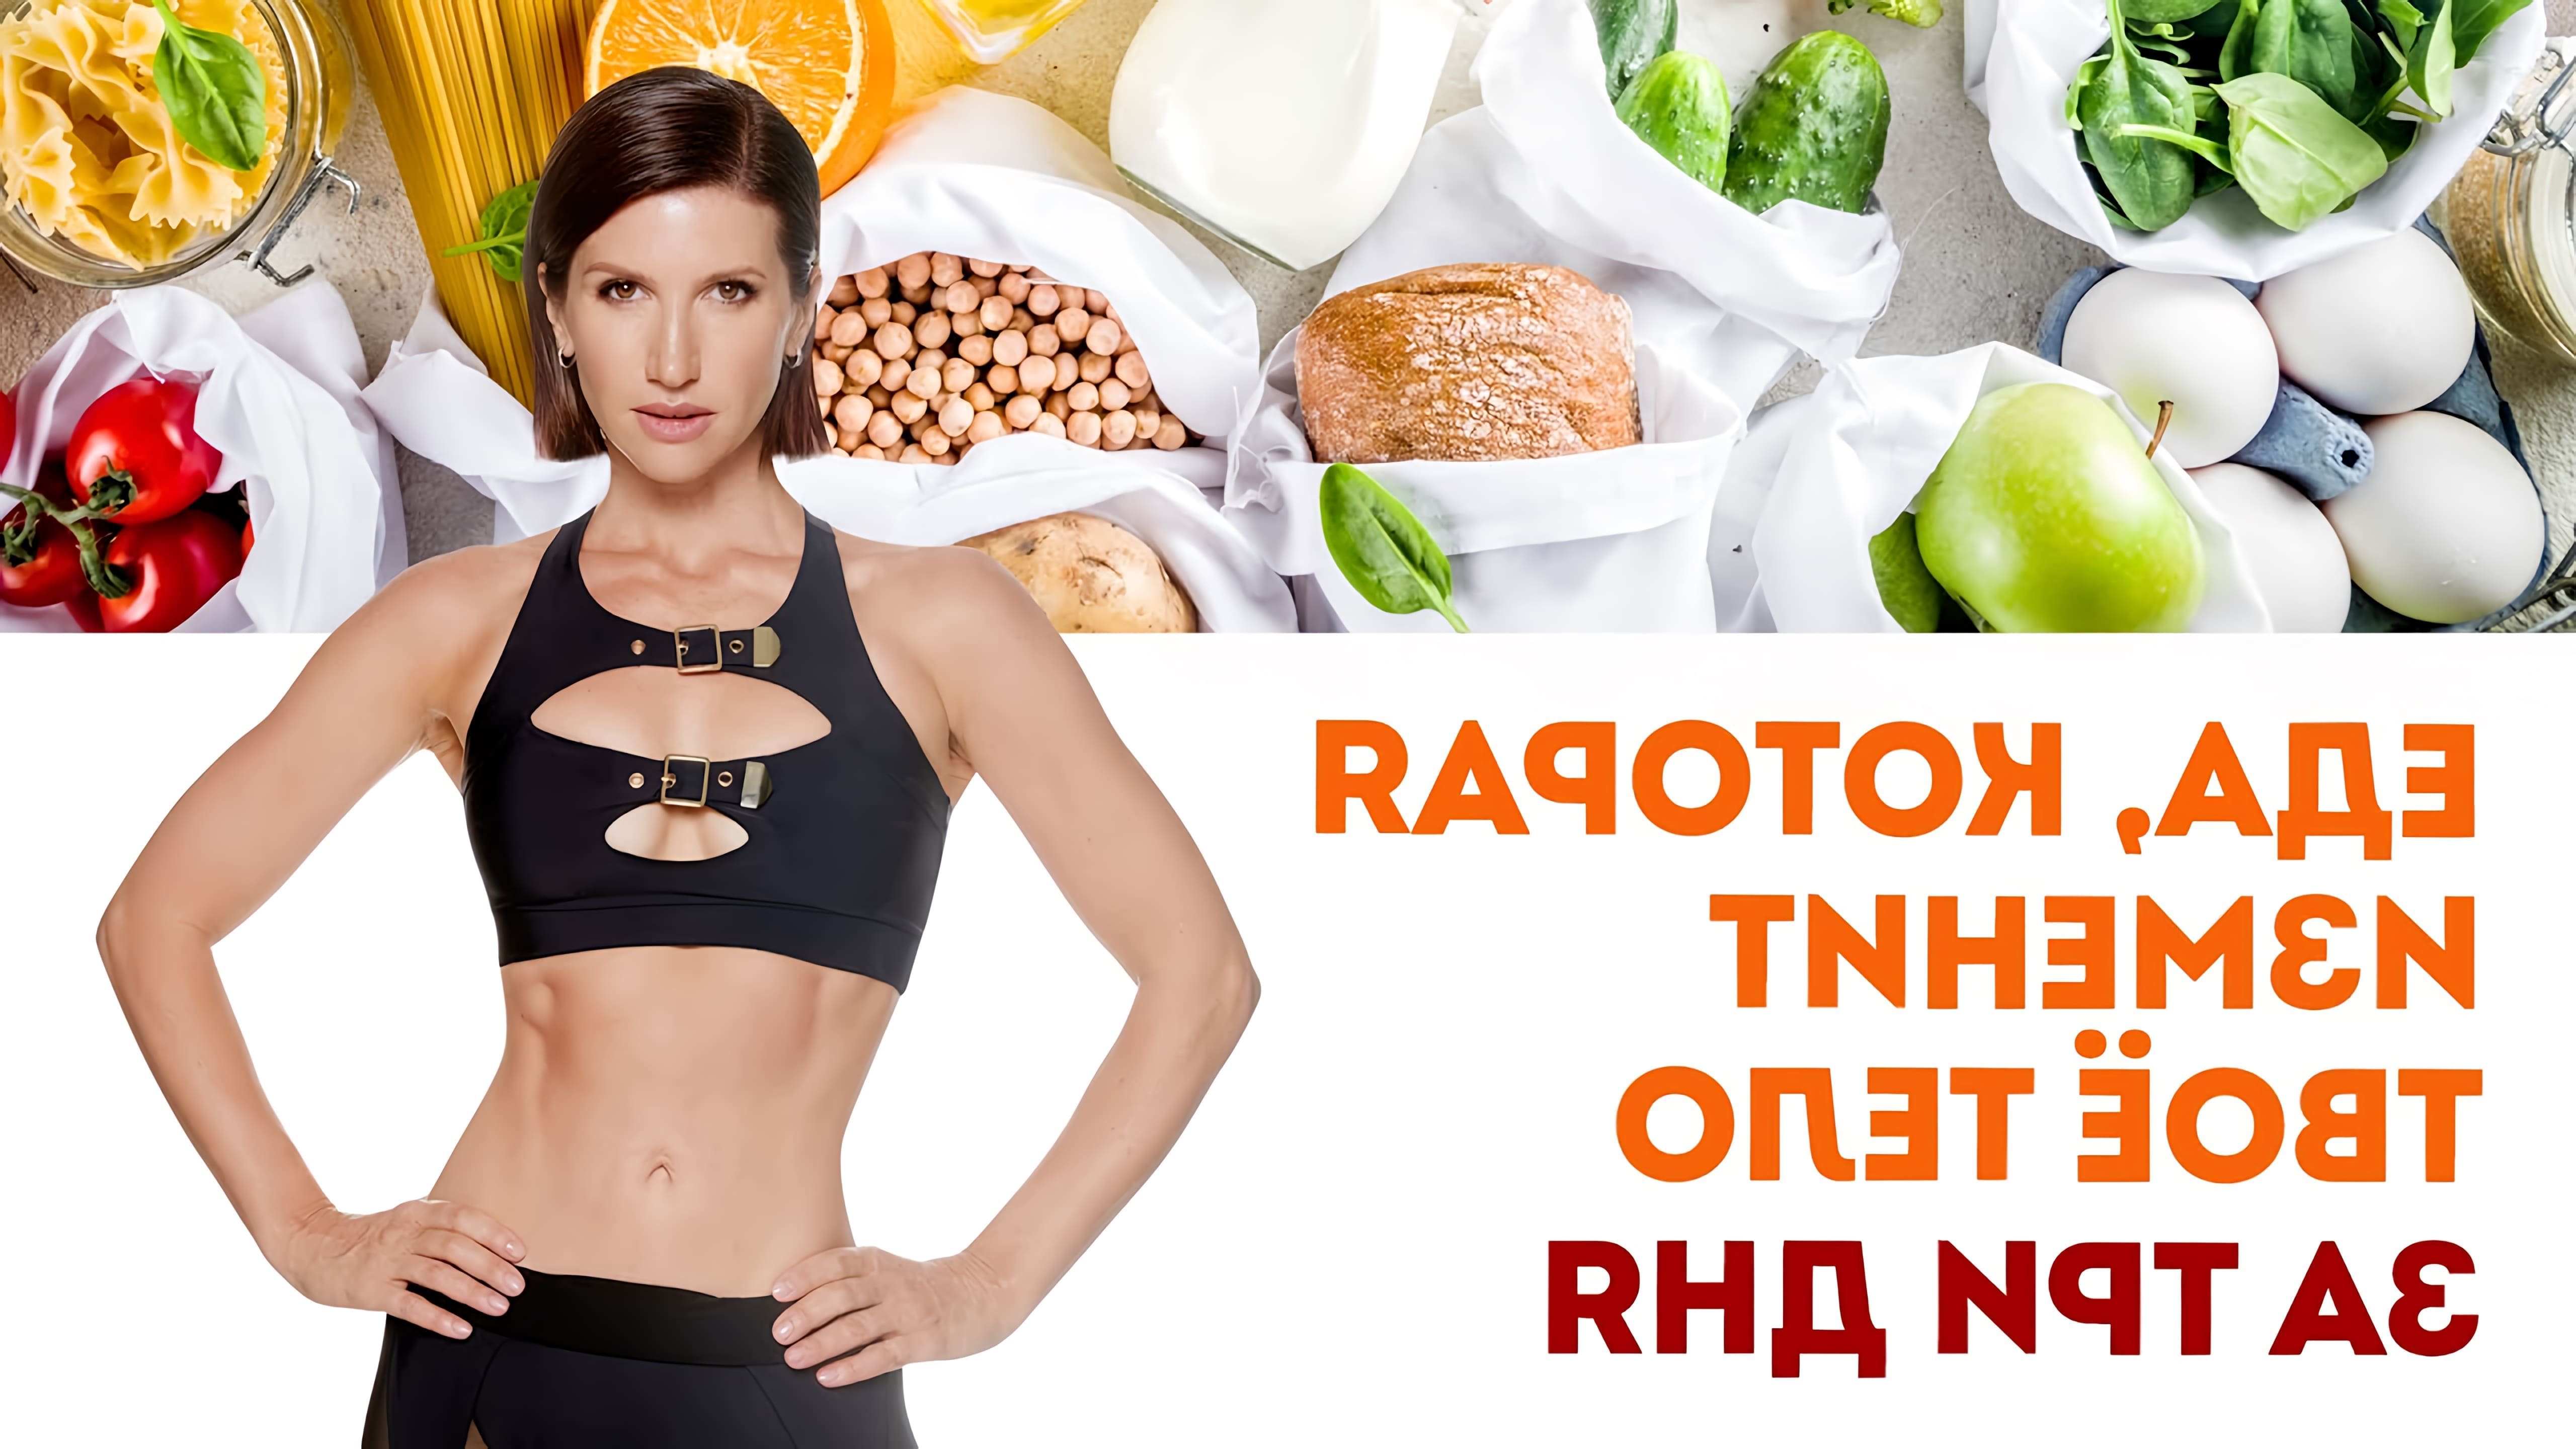 В этом видео Анита Луценко, фитнес-тренер и нутрициолог, рассказывает о правильном питании для похудения